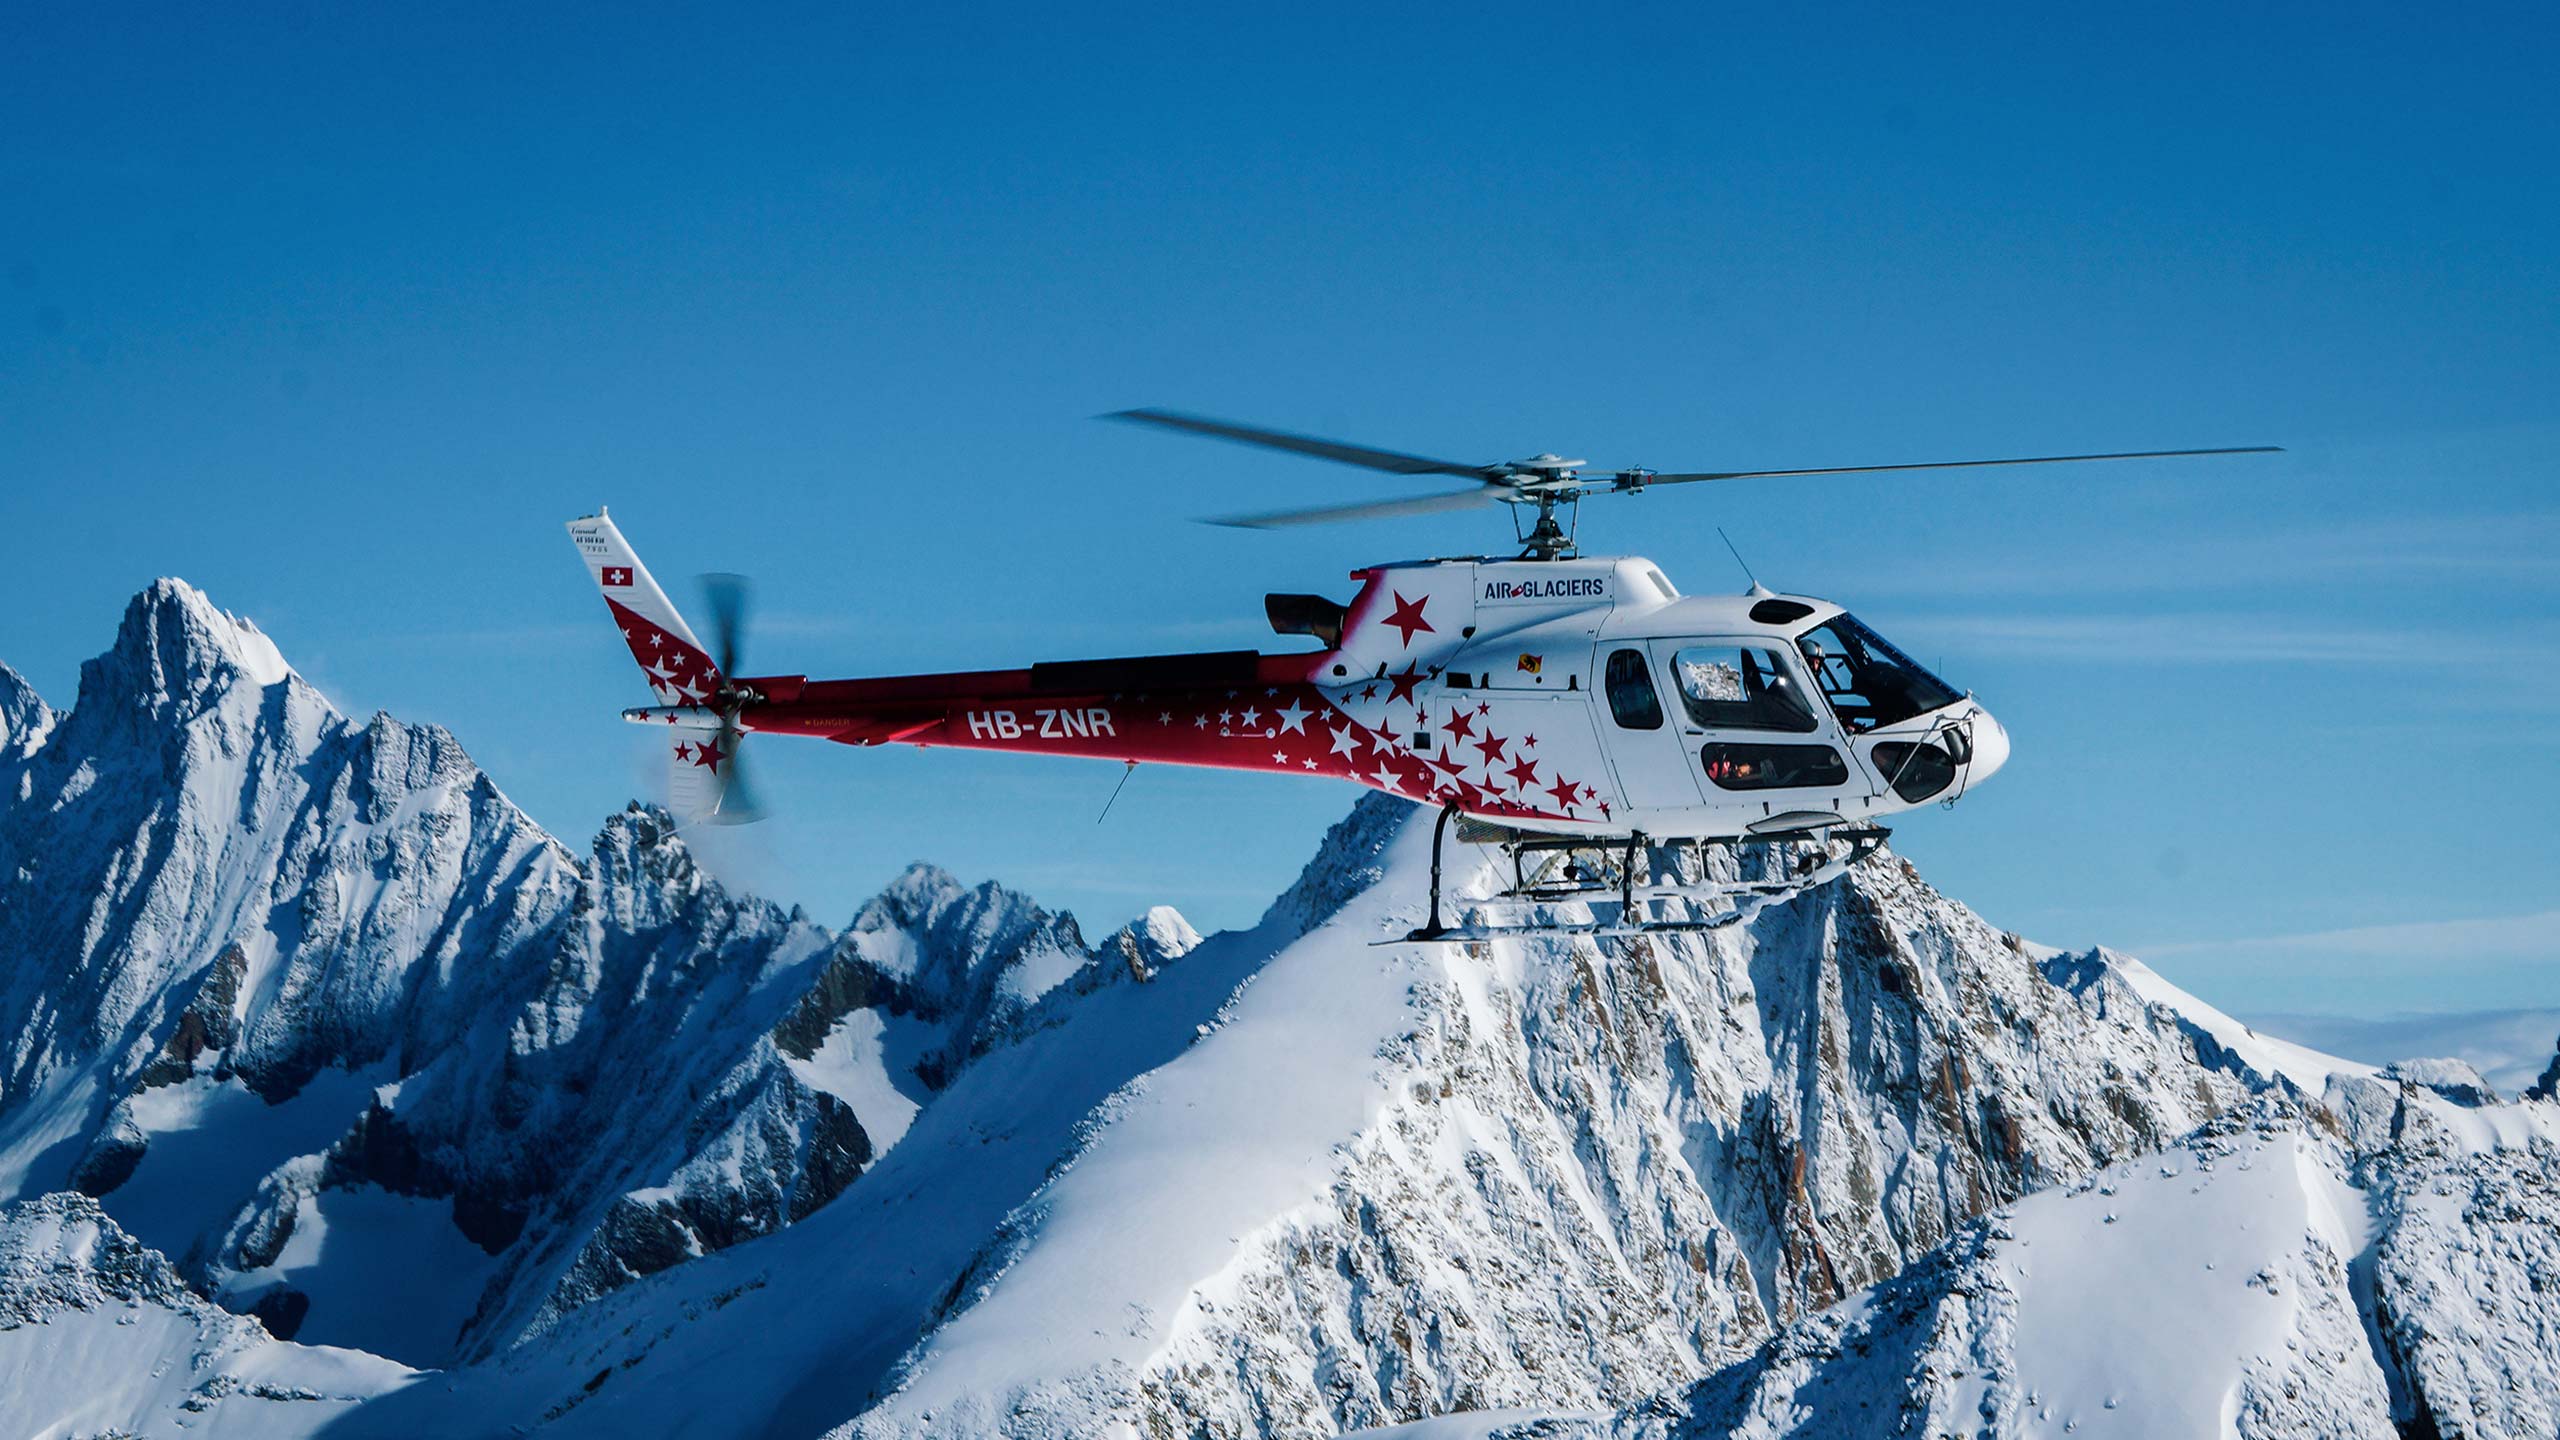 air-glaciers-helikopter-flug-berge-schnee-bild-4.jpg